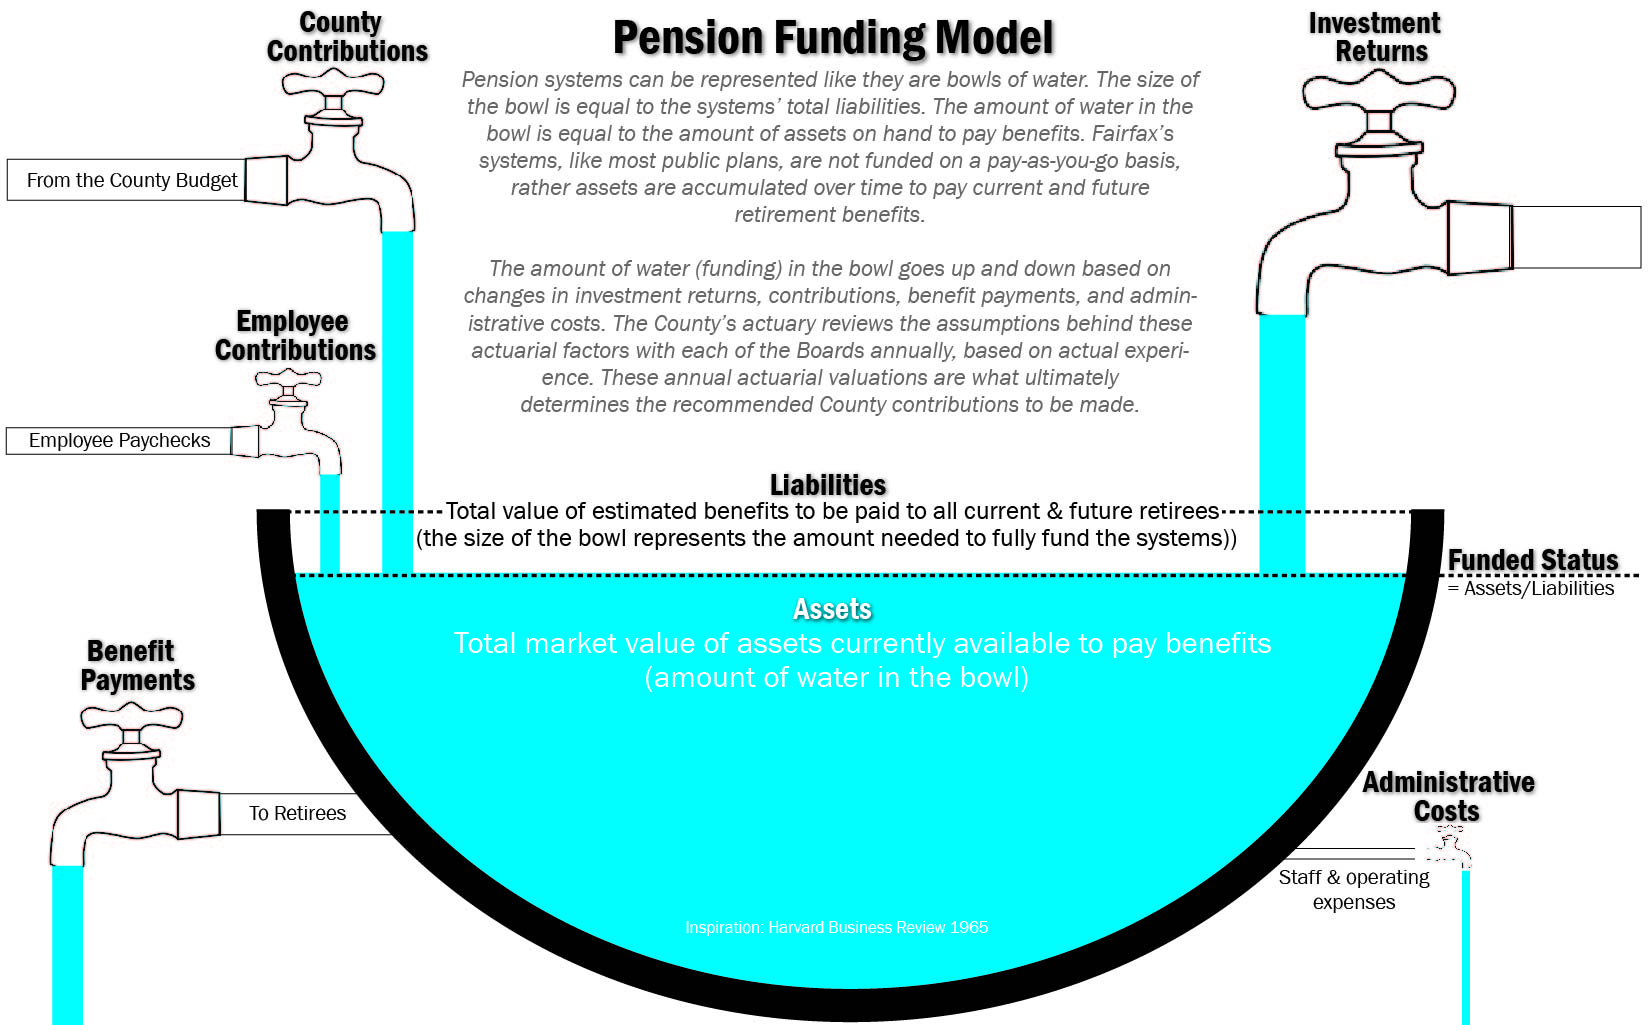 Funding Model